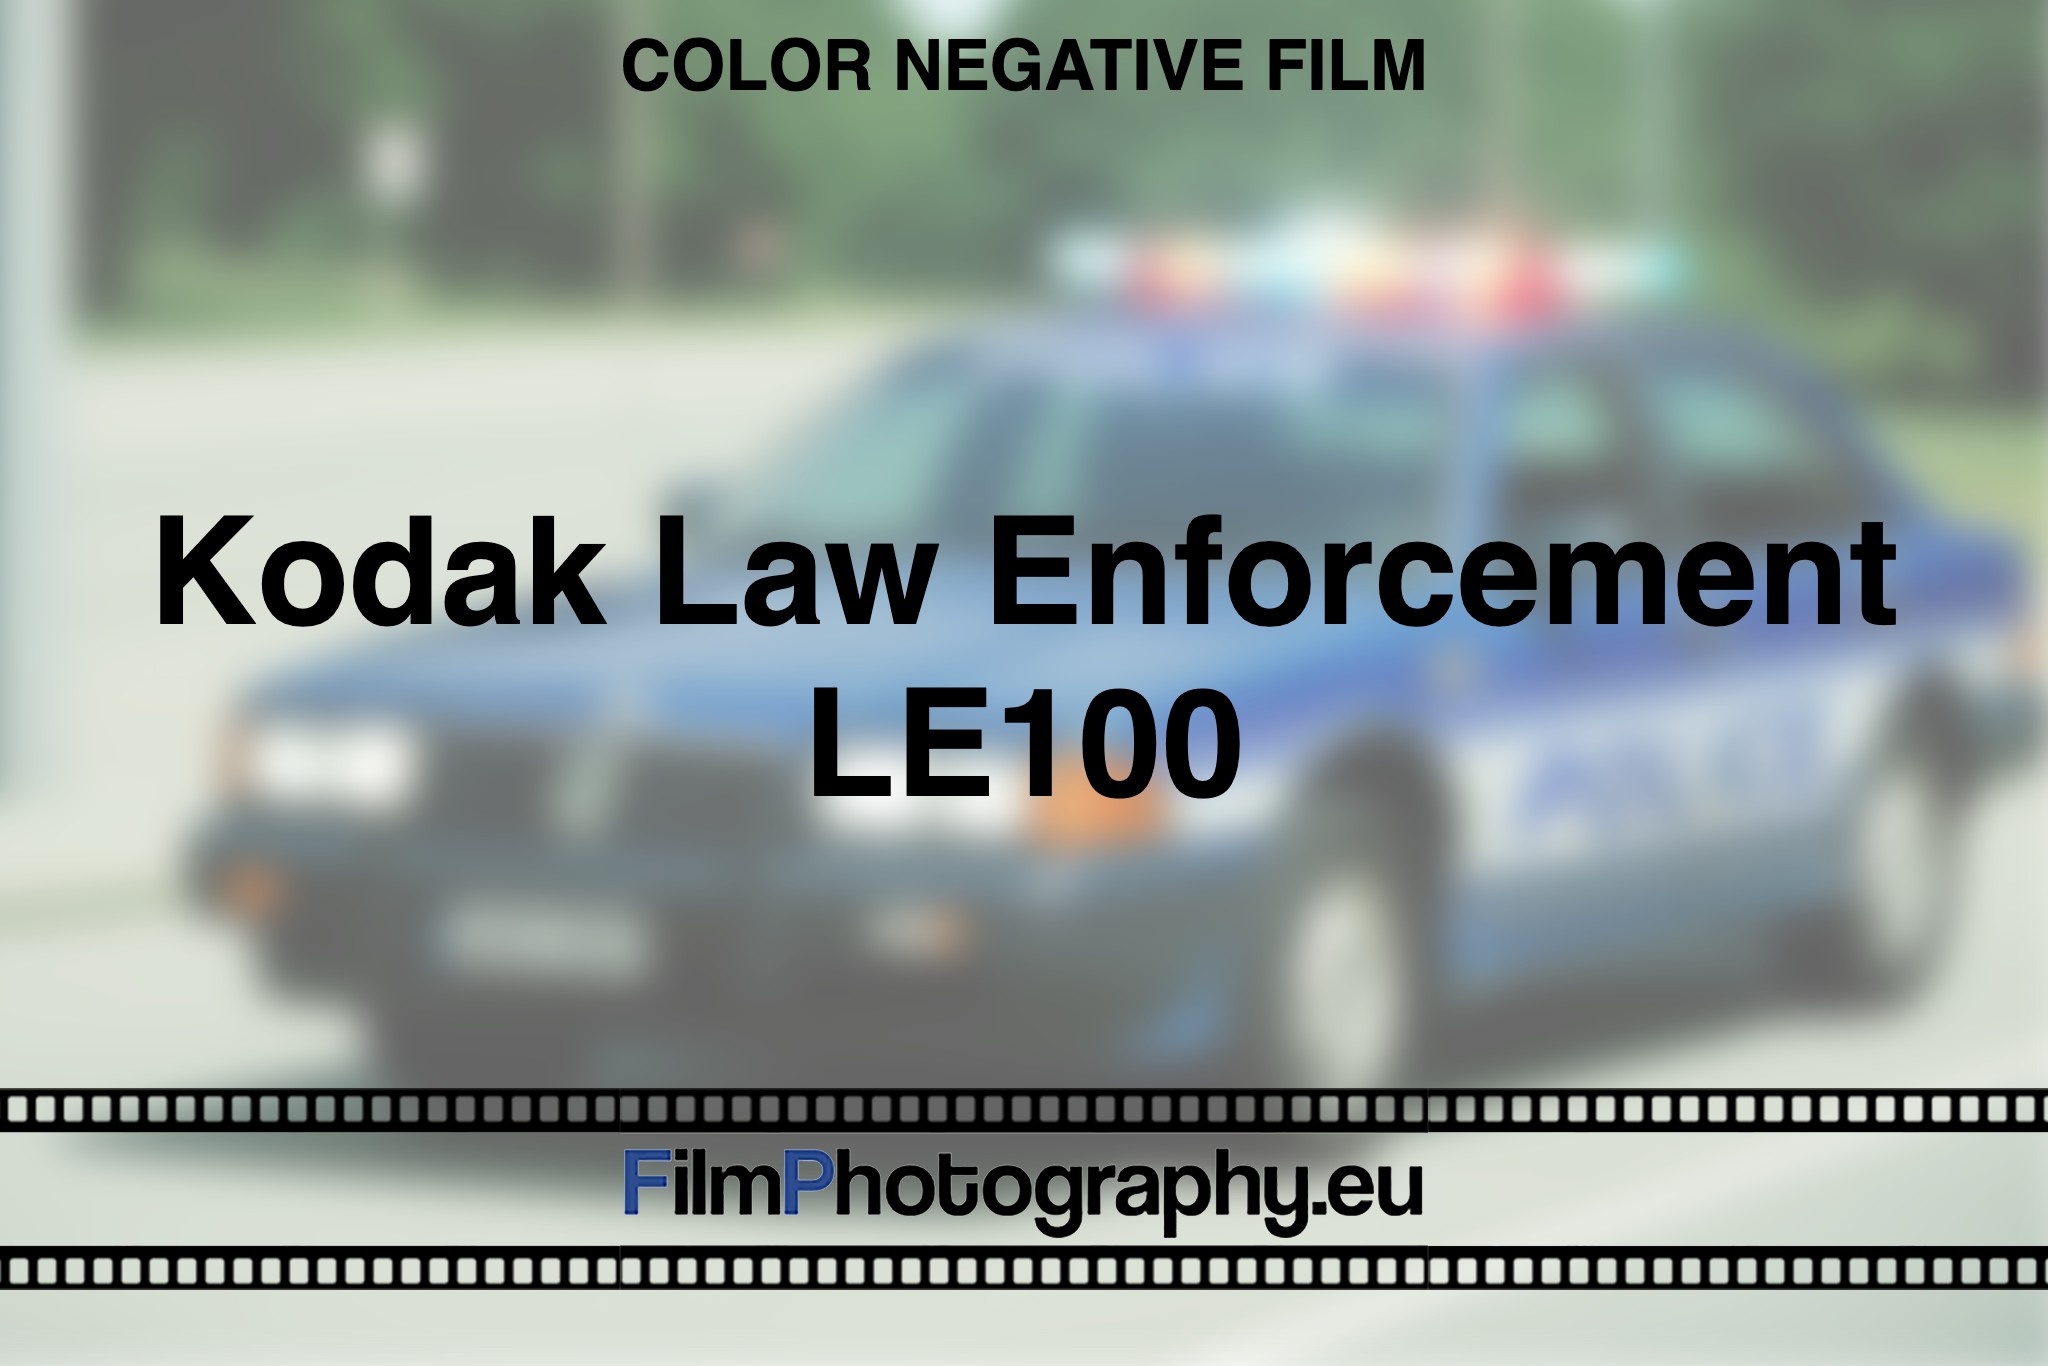 Kodak-Law-Enforcement-LE100-Color-negative-film-bnv